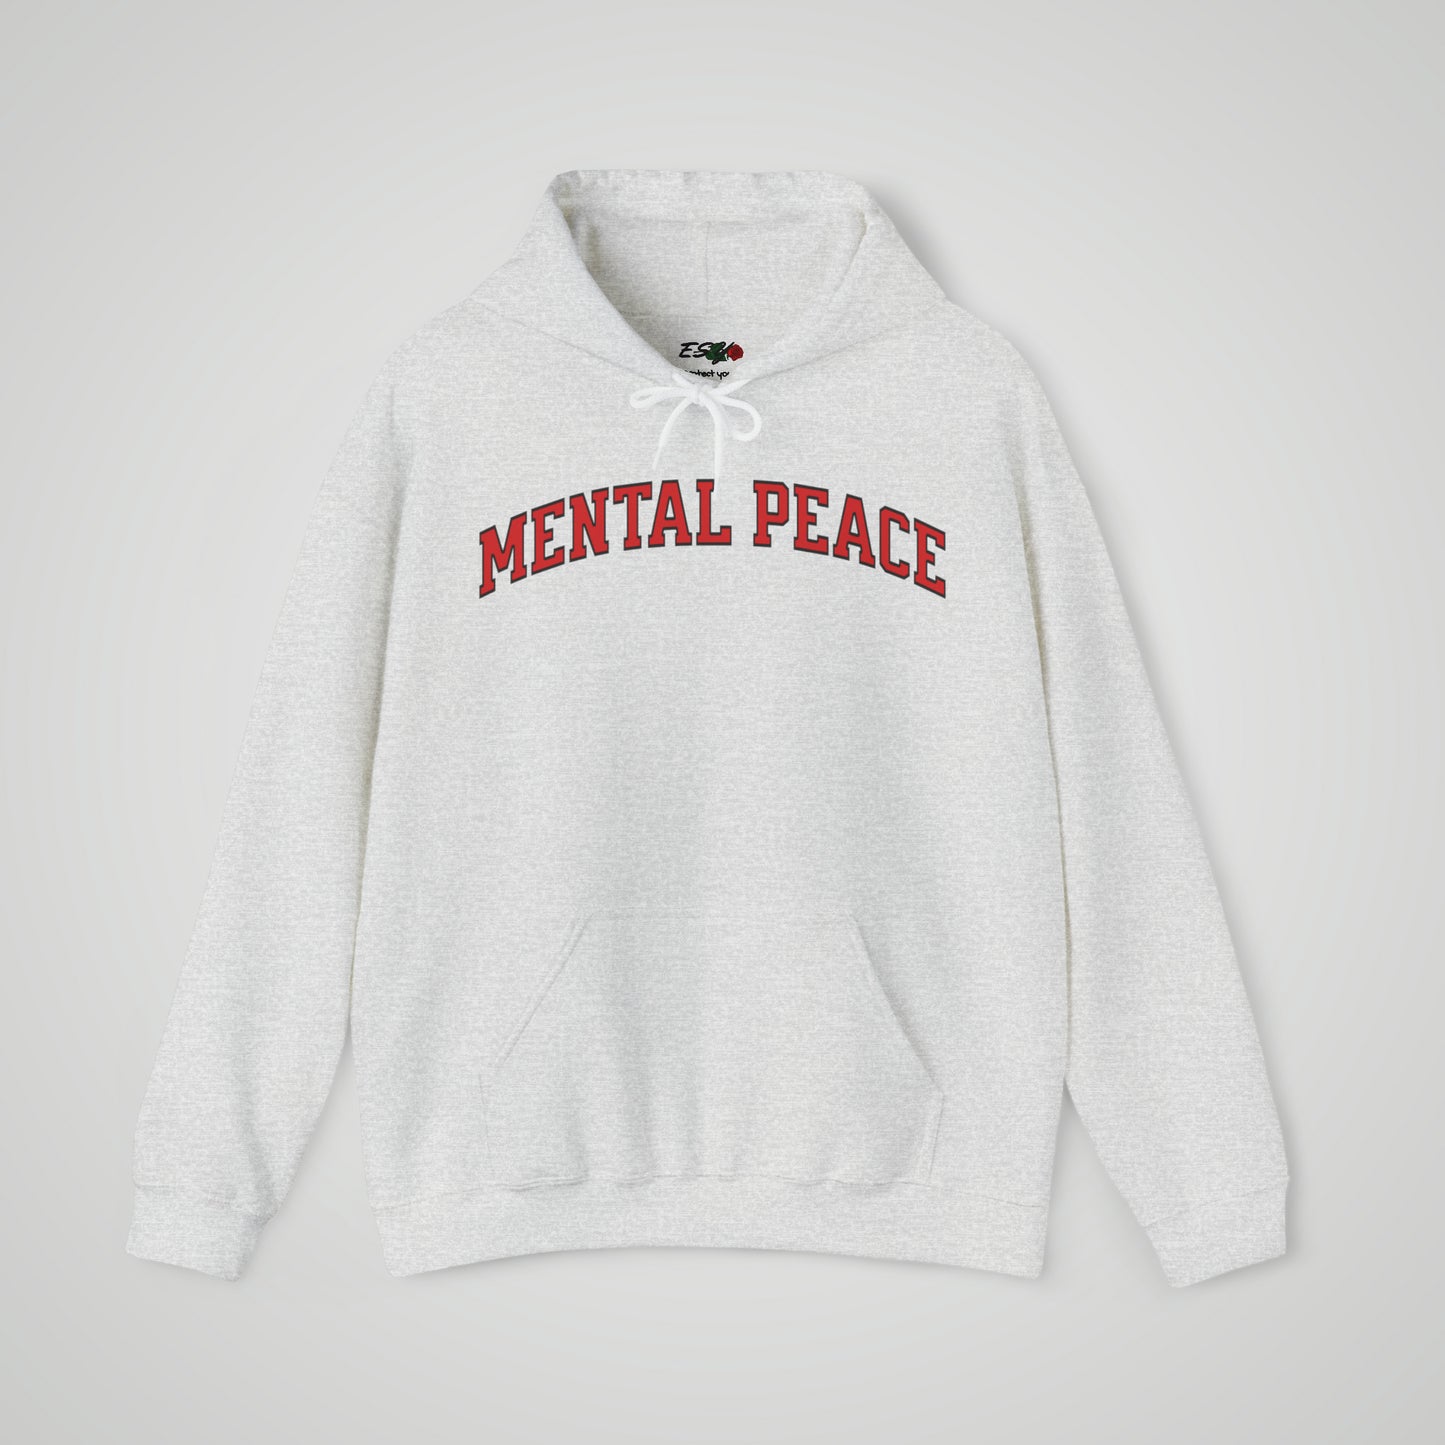 Mental peace hoodie